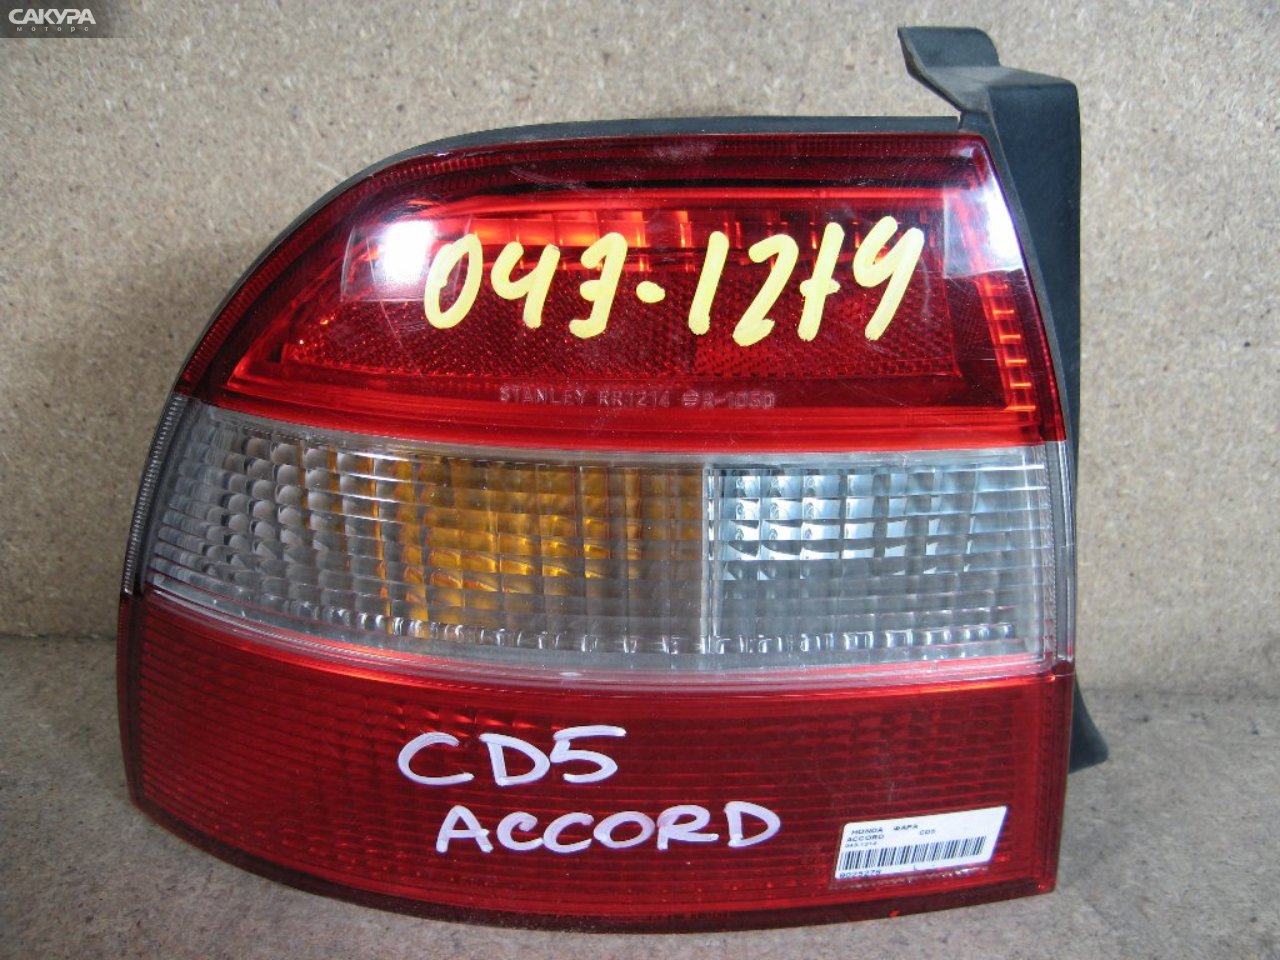 Фонарь стоп-сигнала левый Honda Accord CD5 043-1214: купить в Сакура Абакан.